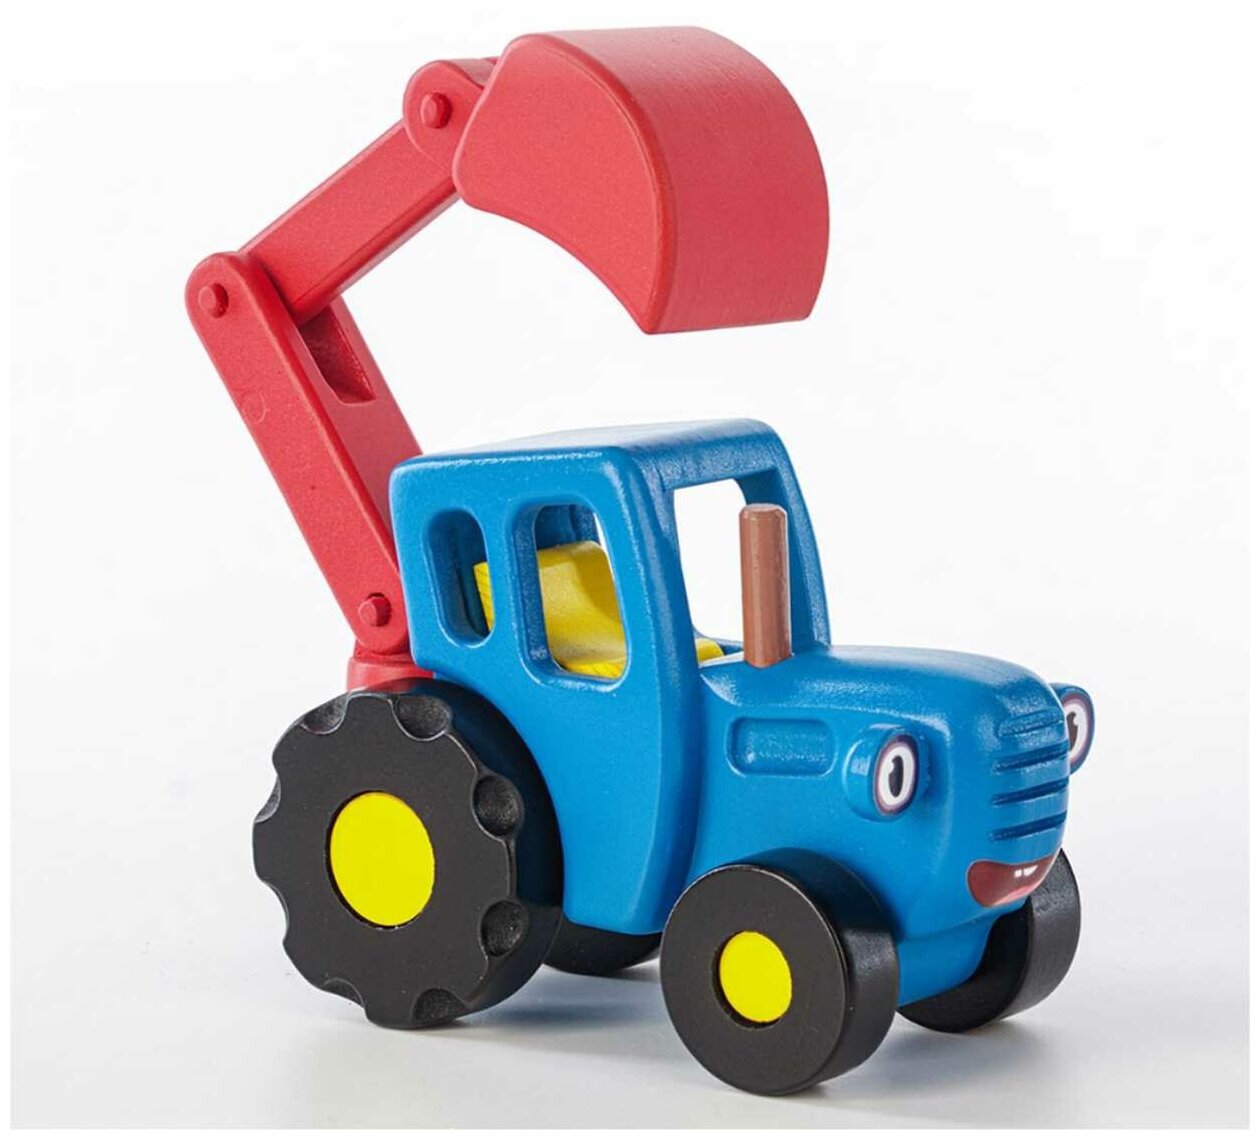 Синий трактор машинка с ковшом